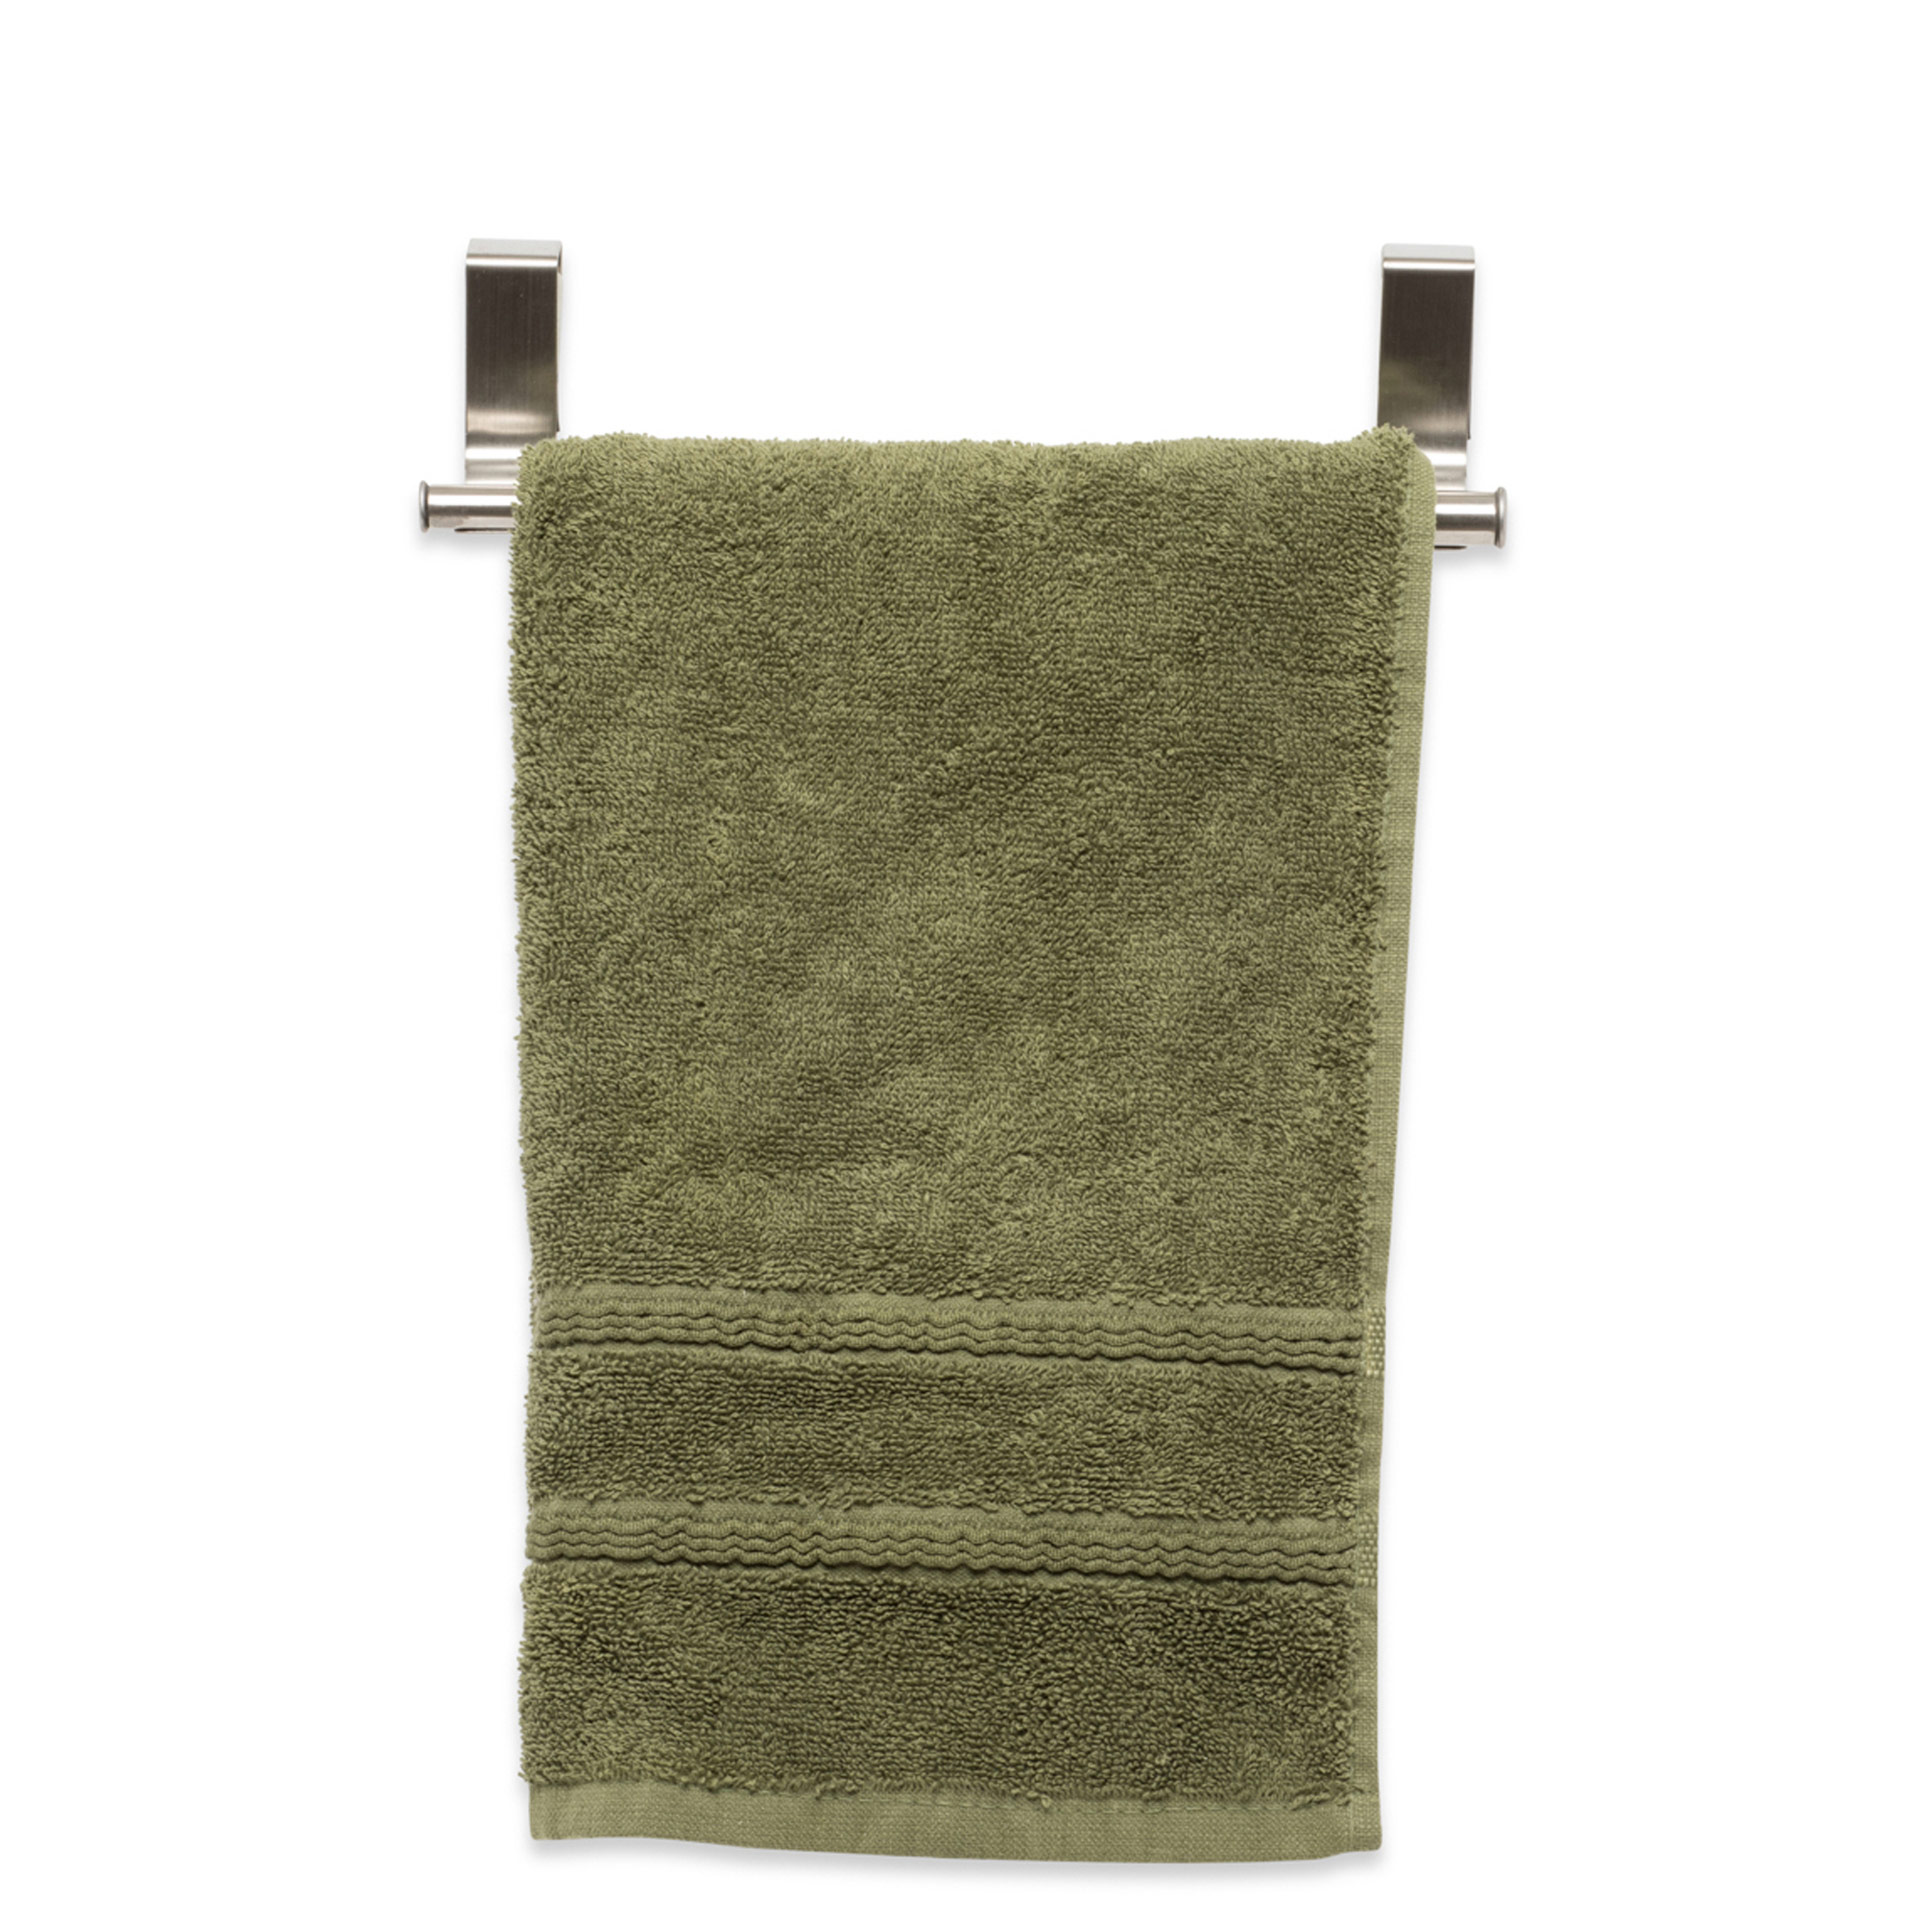 nero BESTONZON multiuso porta asciugamani canovaccio del supporto di pulizia asciugatura stracci organizer 